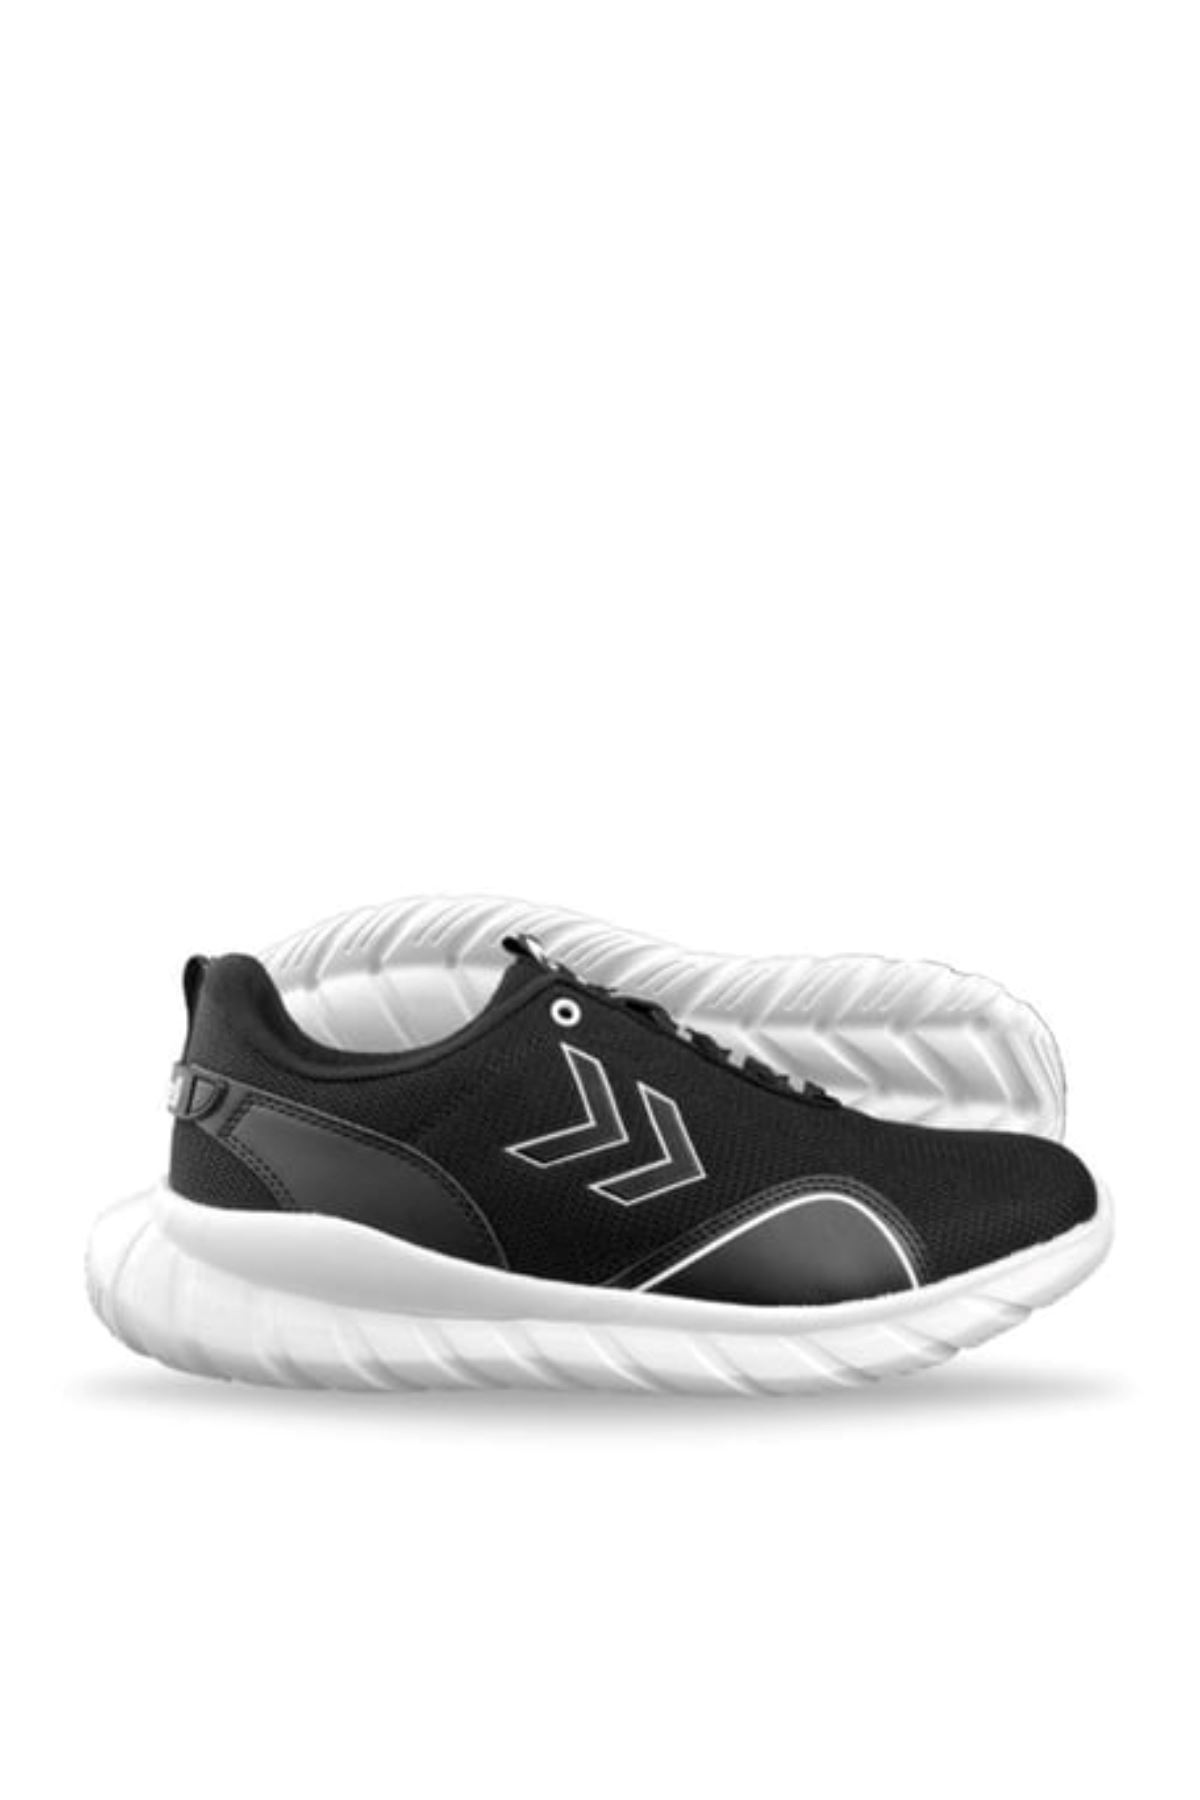 Hummel Gaudı Kadın Siyah Spor Ayakkabı - 900144-2001